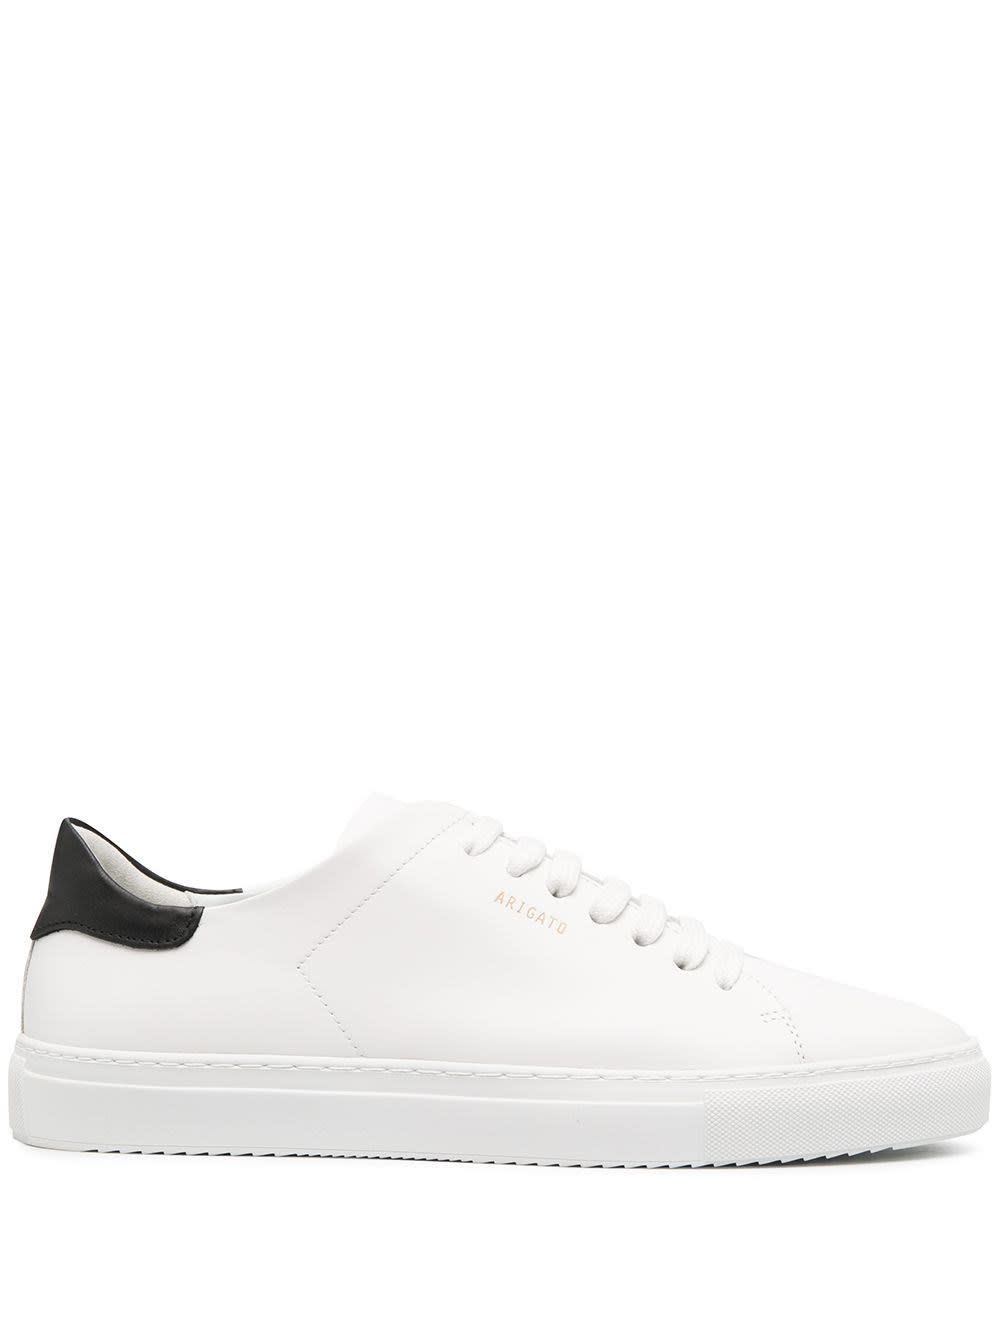 Axel Arigato White Leather Sneakers